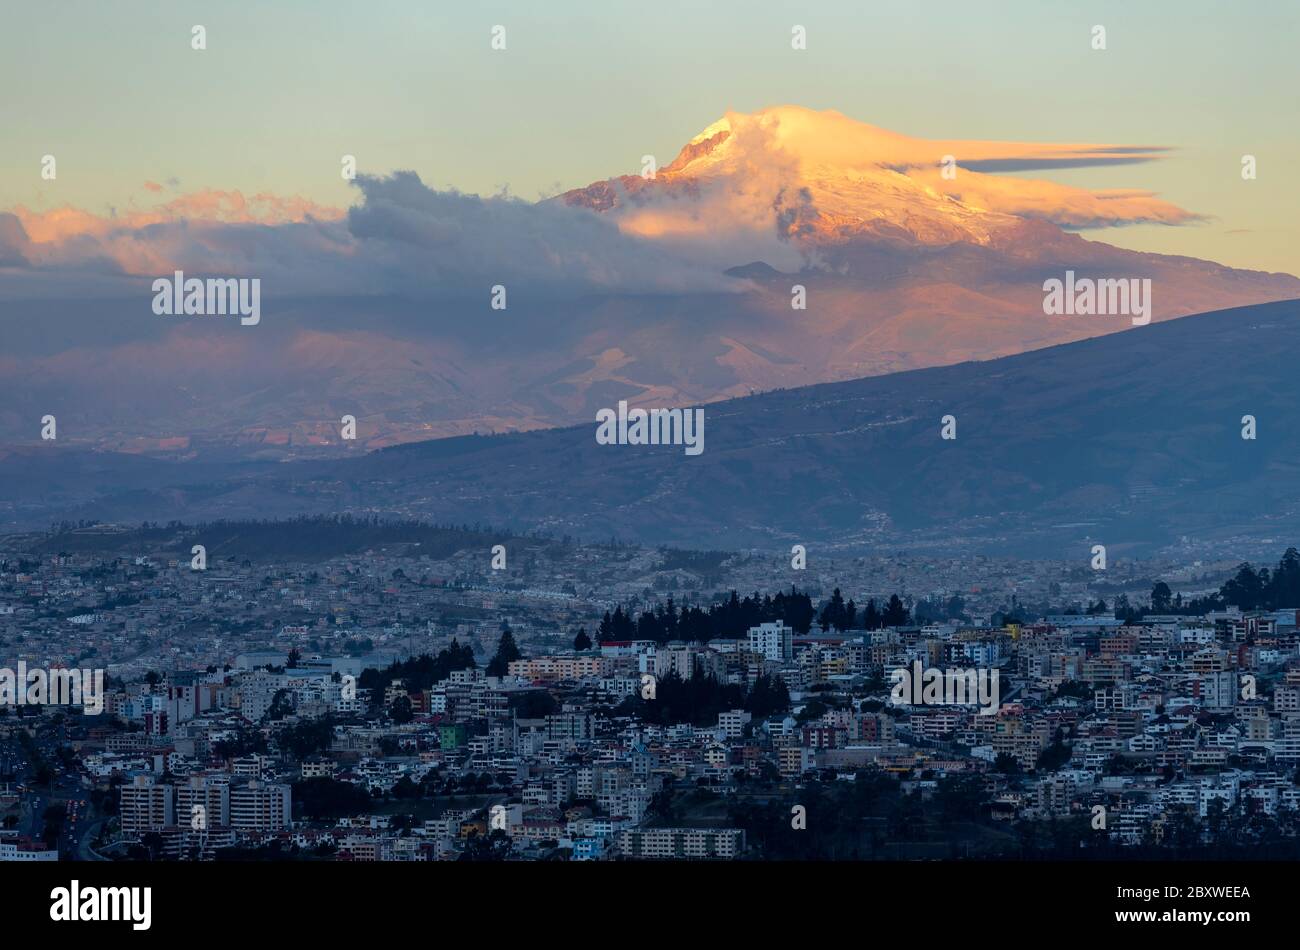 Suggestivo paesaggio del vulcano Cayambe al tramonto con lo skyline della città di Quito, Ecuador. Foto Stock